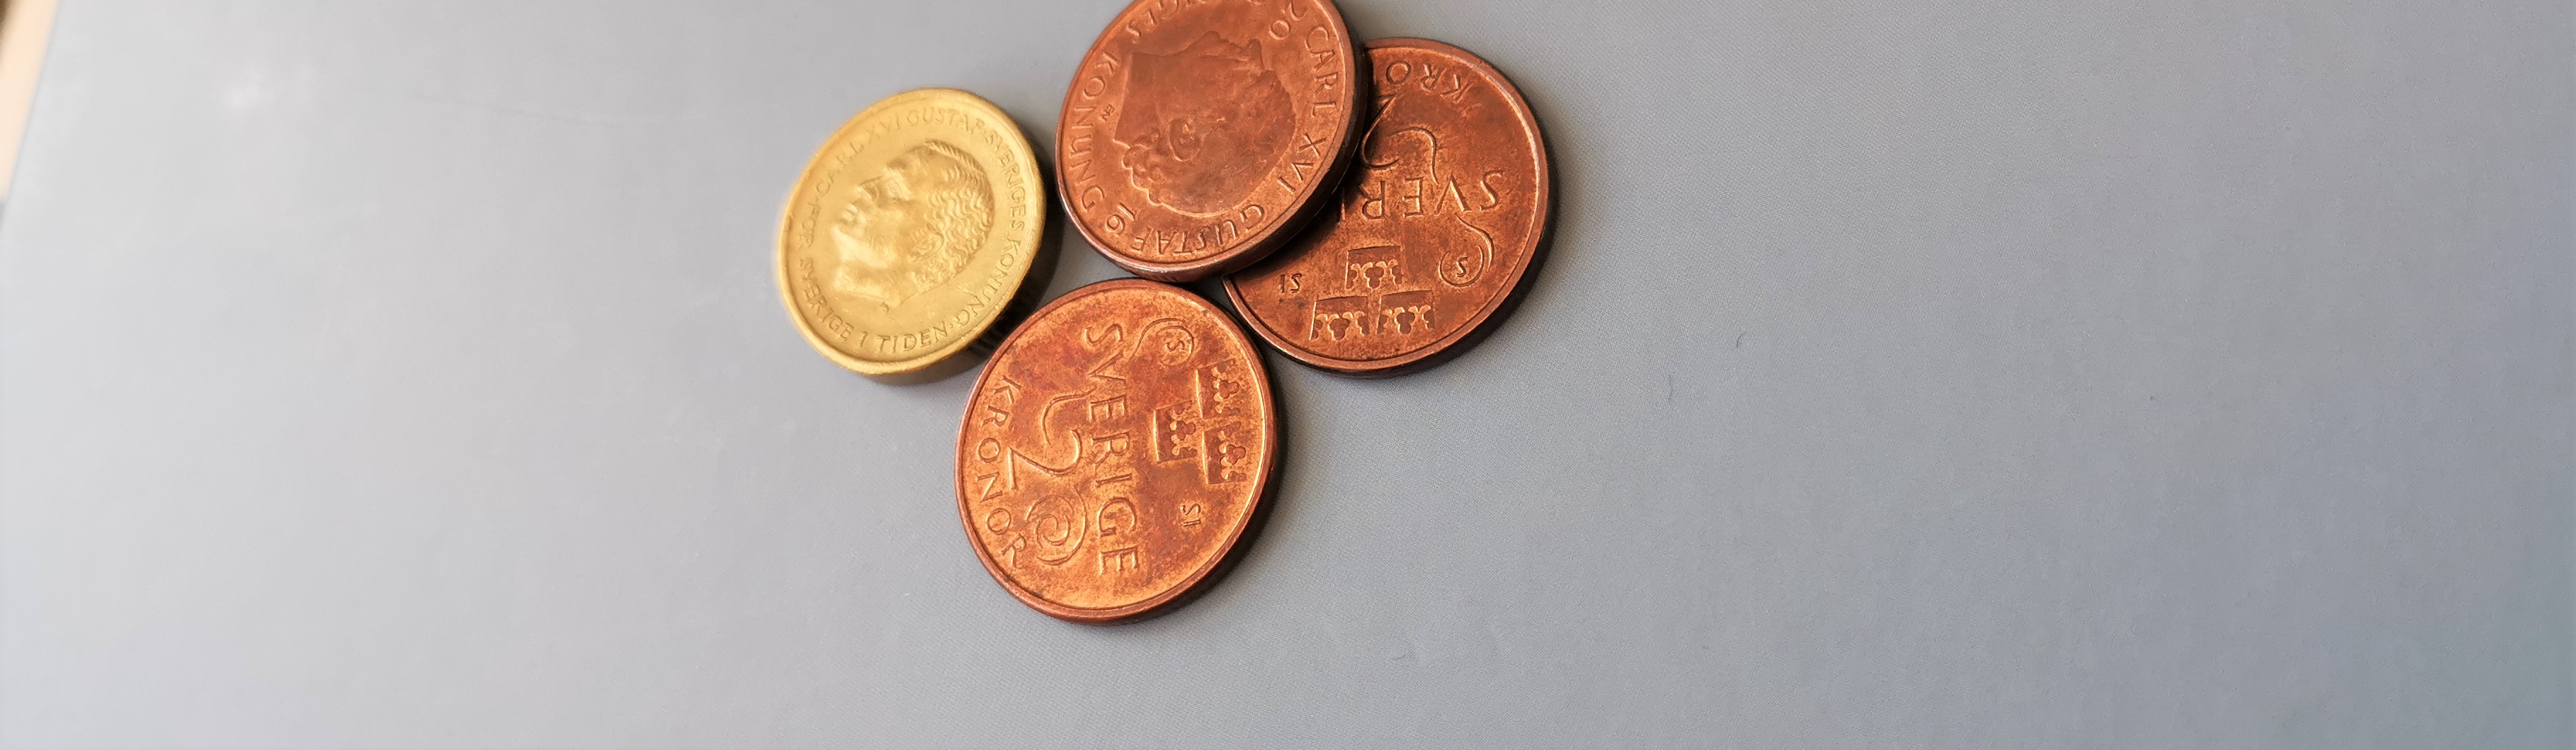 Några mynt som ligger på ett bord